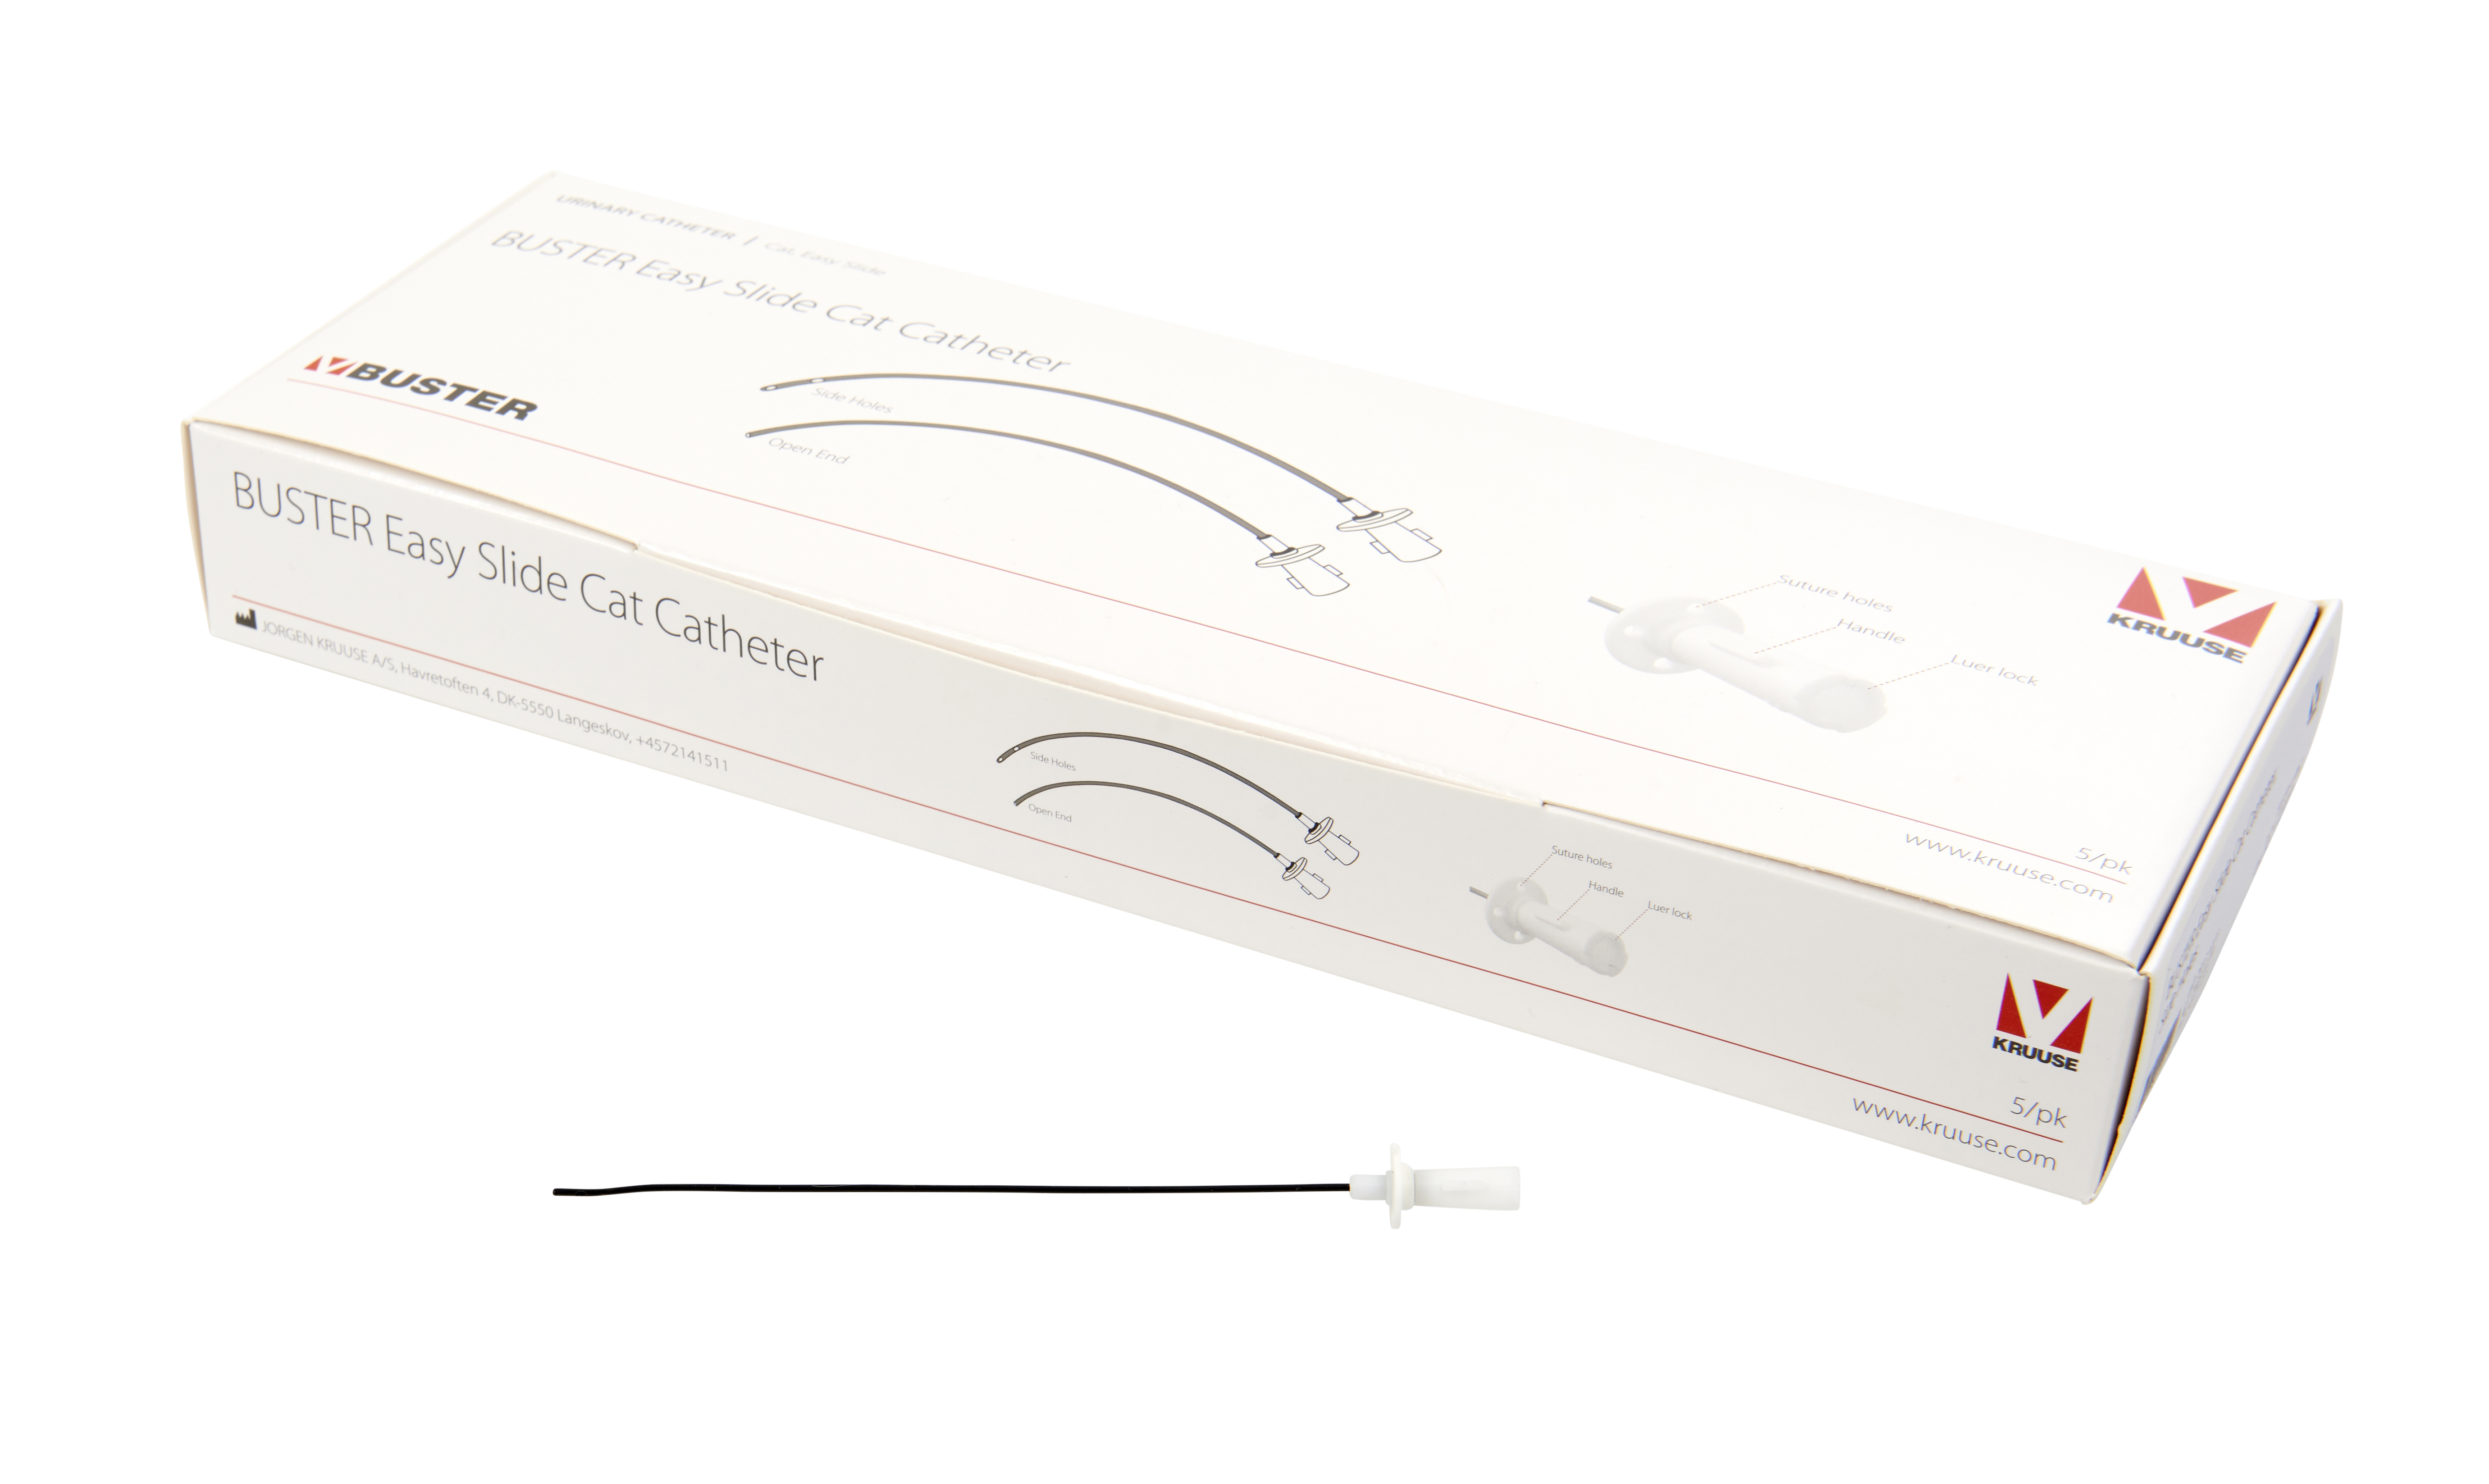 BUSTER Easy Slide Cat Catheter, 3.5 Fr x 6”, 1.2 x 140 mm, side holes, 5/pk